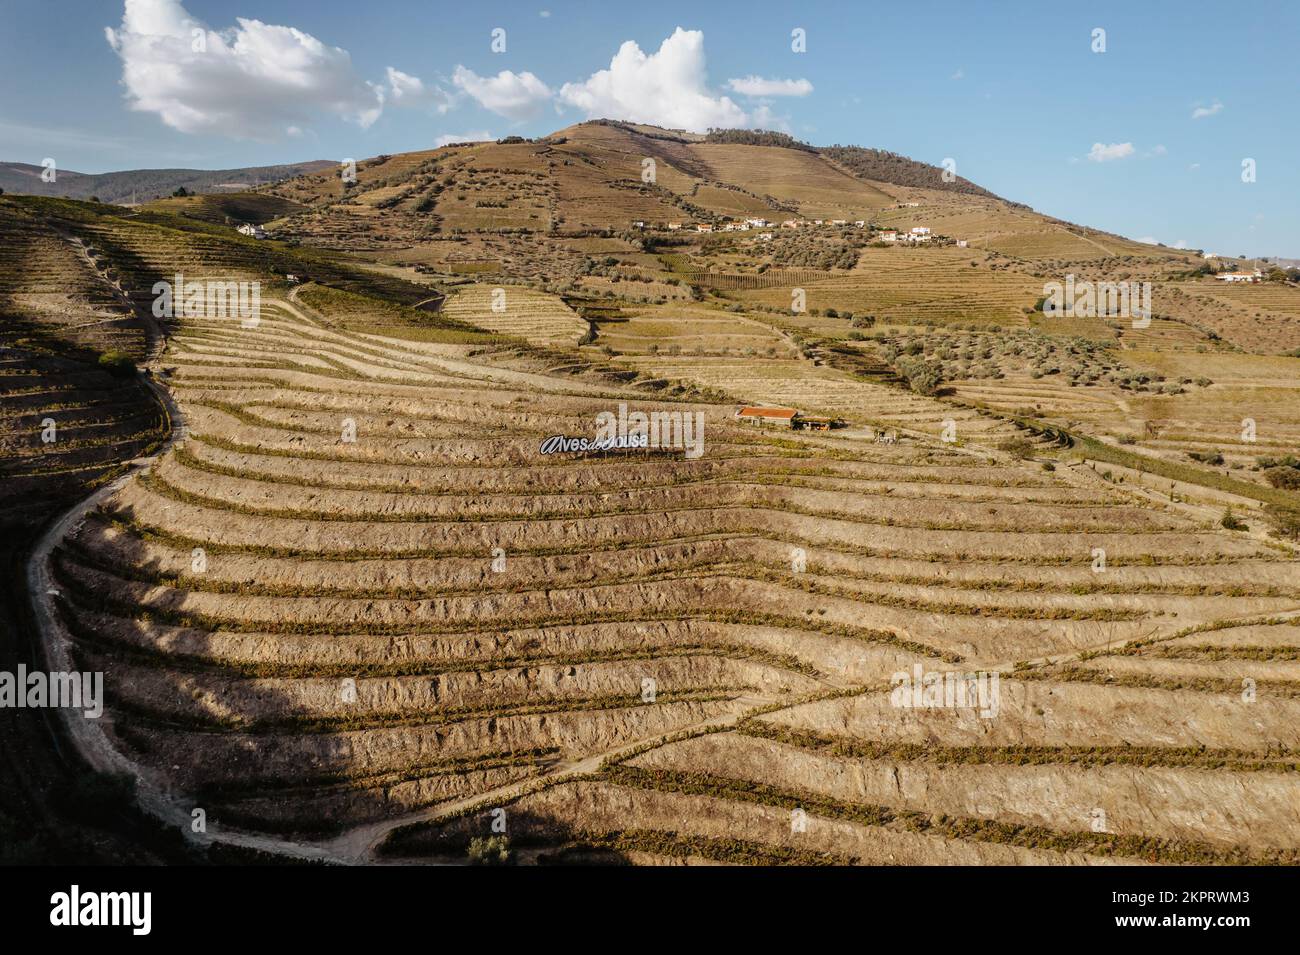 Vue aérienne de la vallée du Douro. Vignobles en terrasse et paysage près de Pinhao, Portugal. Région viticole portugaise. Beau paysage d'automne.concept pour le travail Banque D'Images